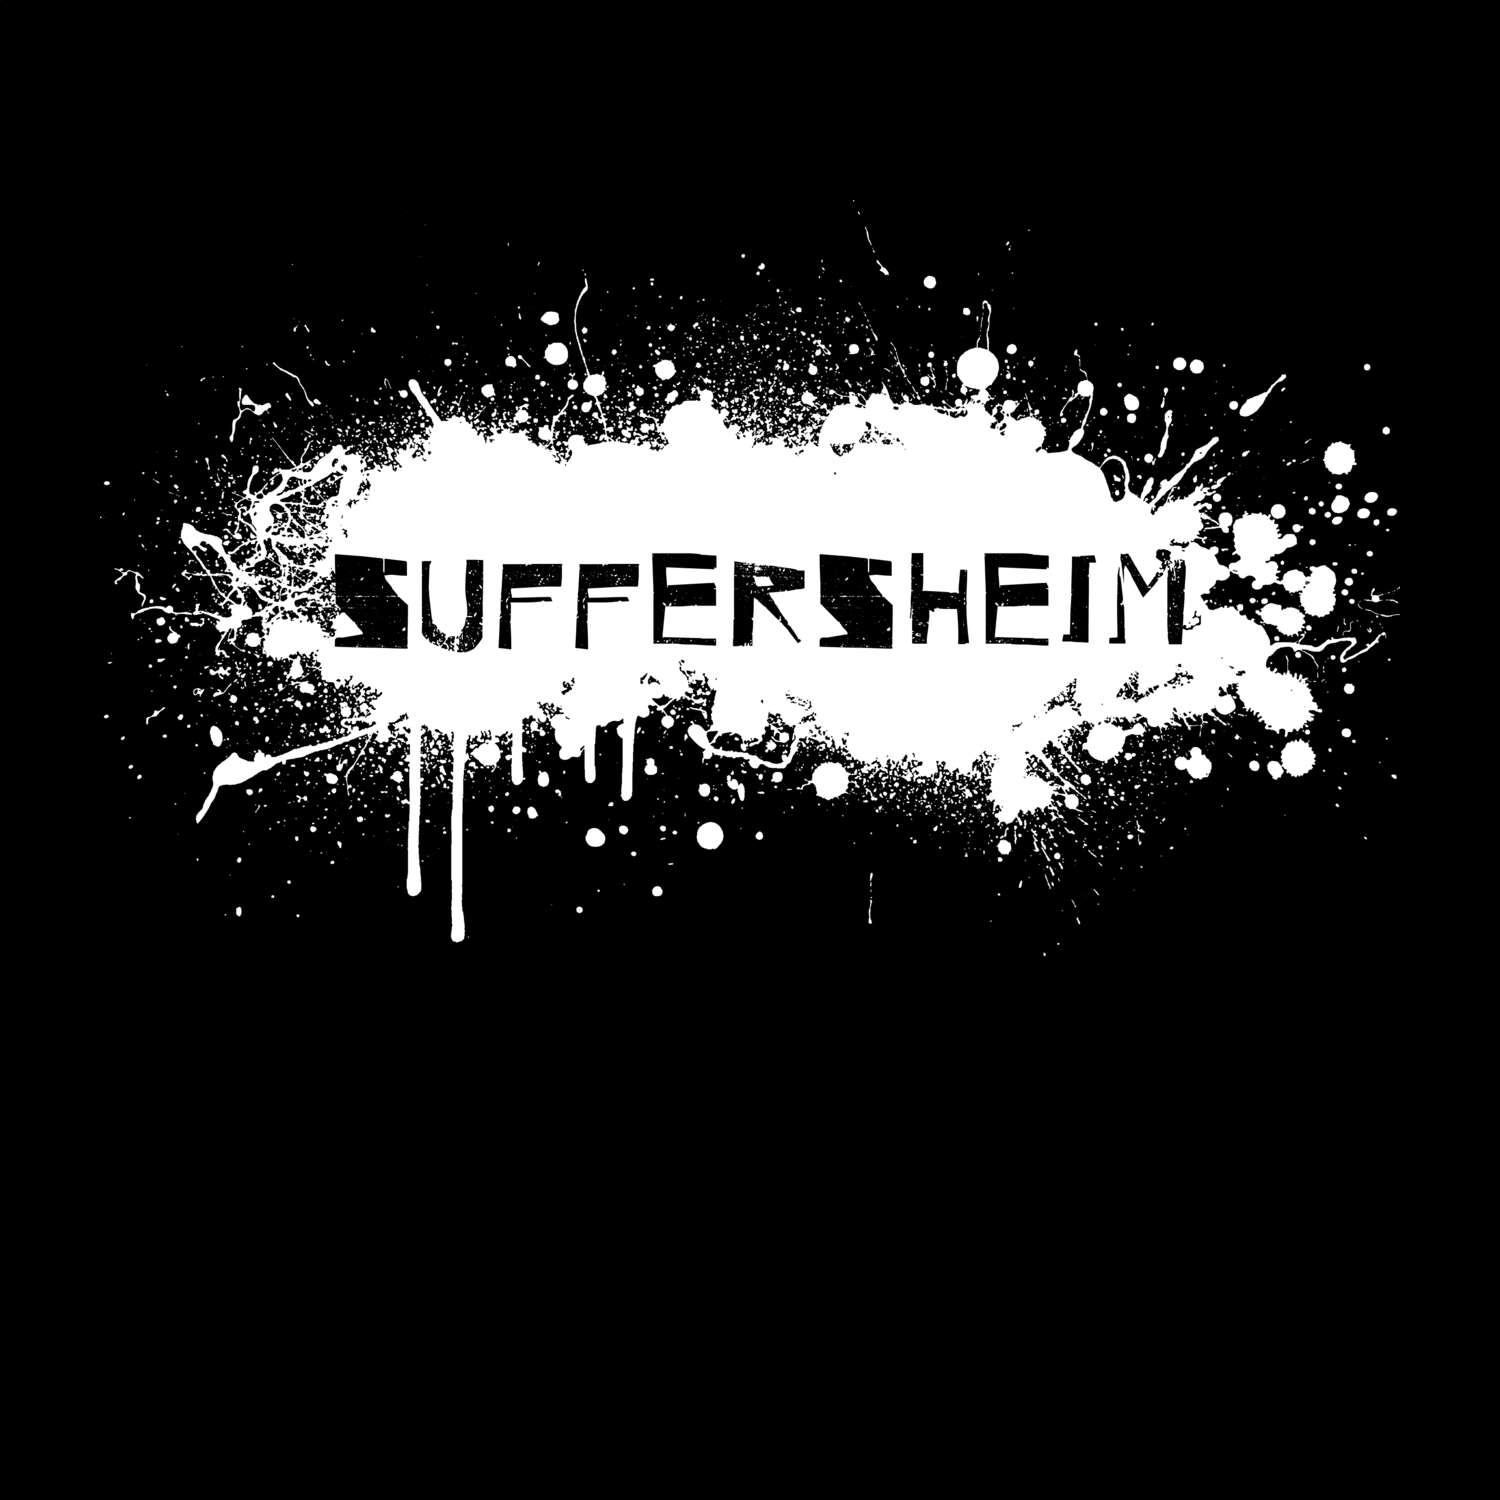 Suffersheim T-Shirt »Paint Splash Punk«